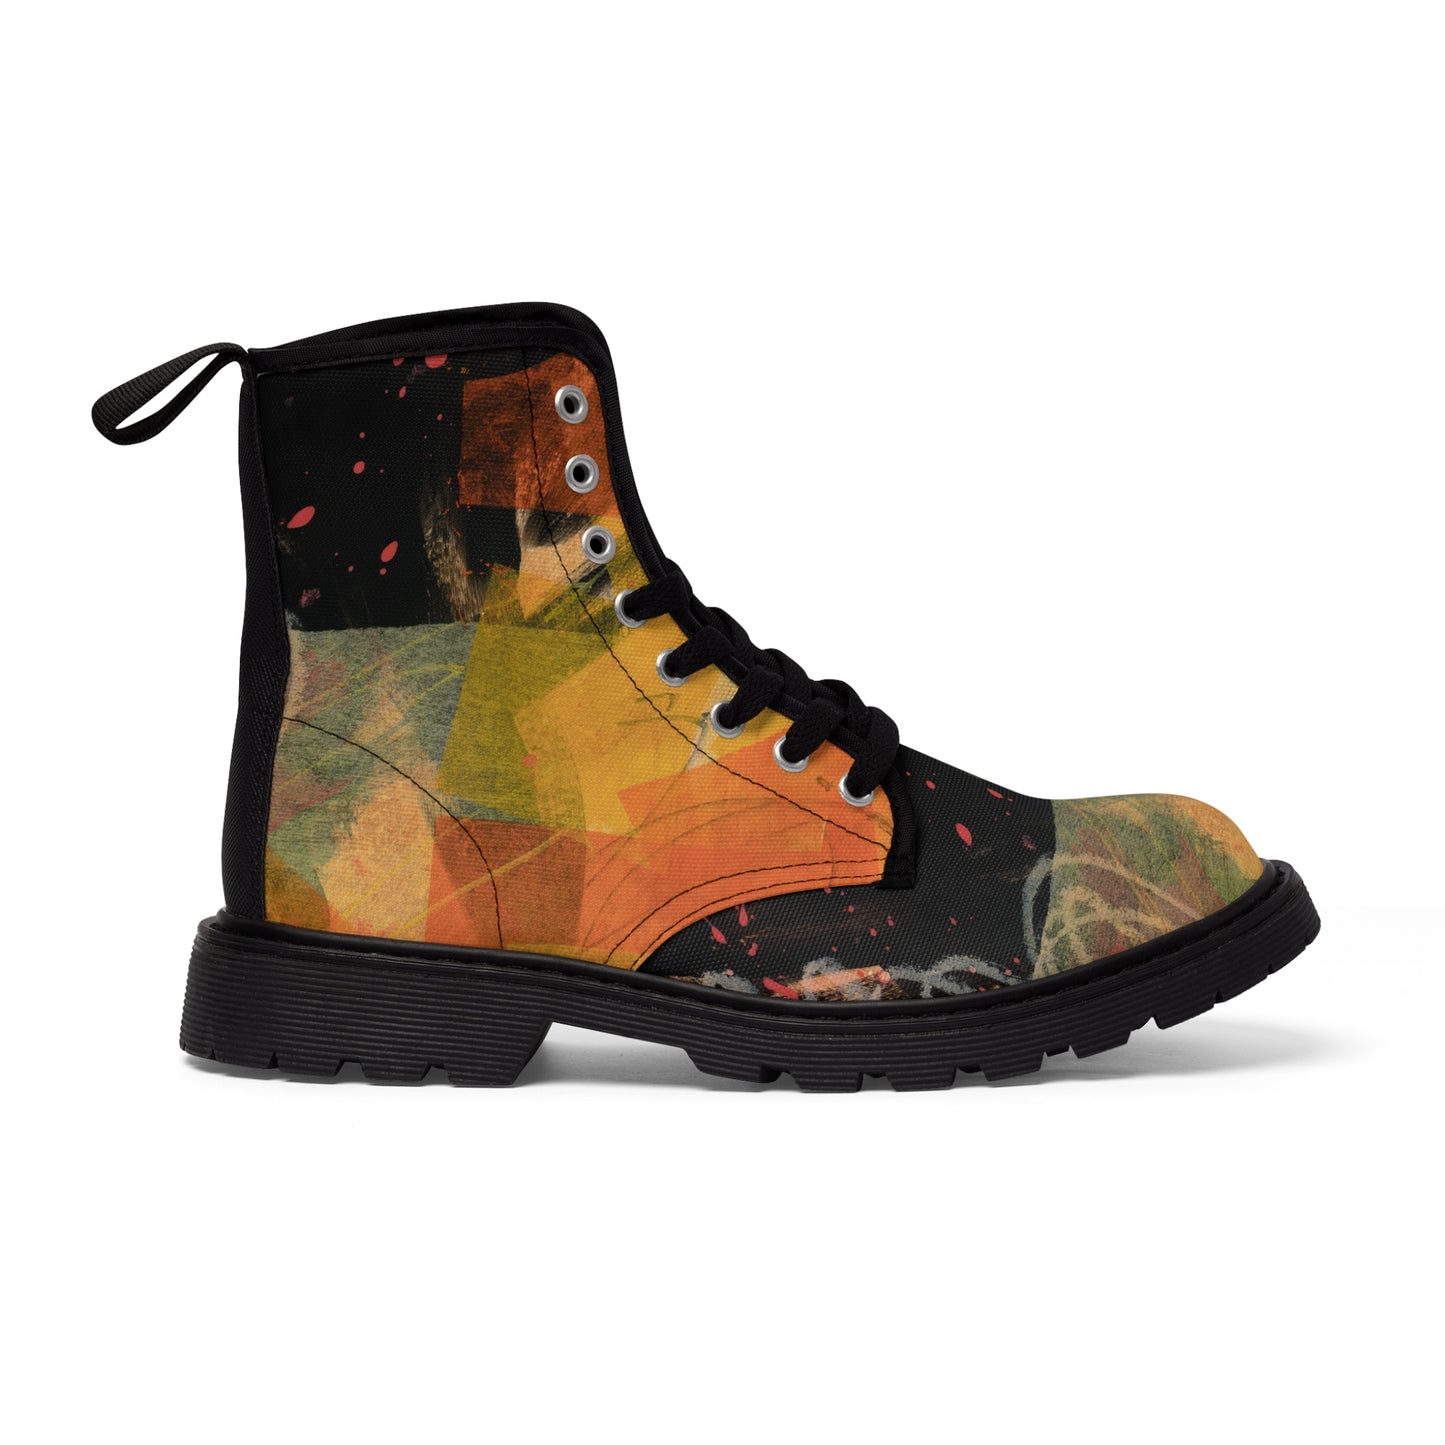 Men's Canvas Boots - 02874 US 10.5 Black sole